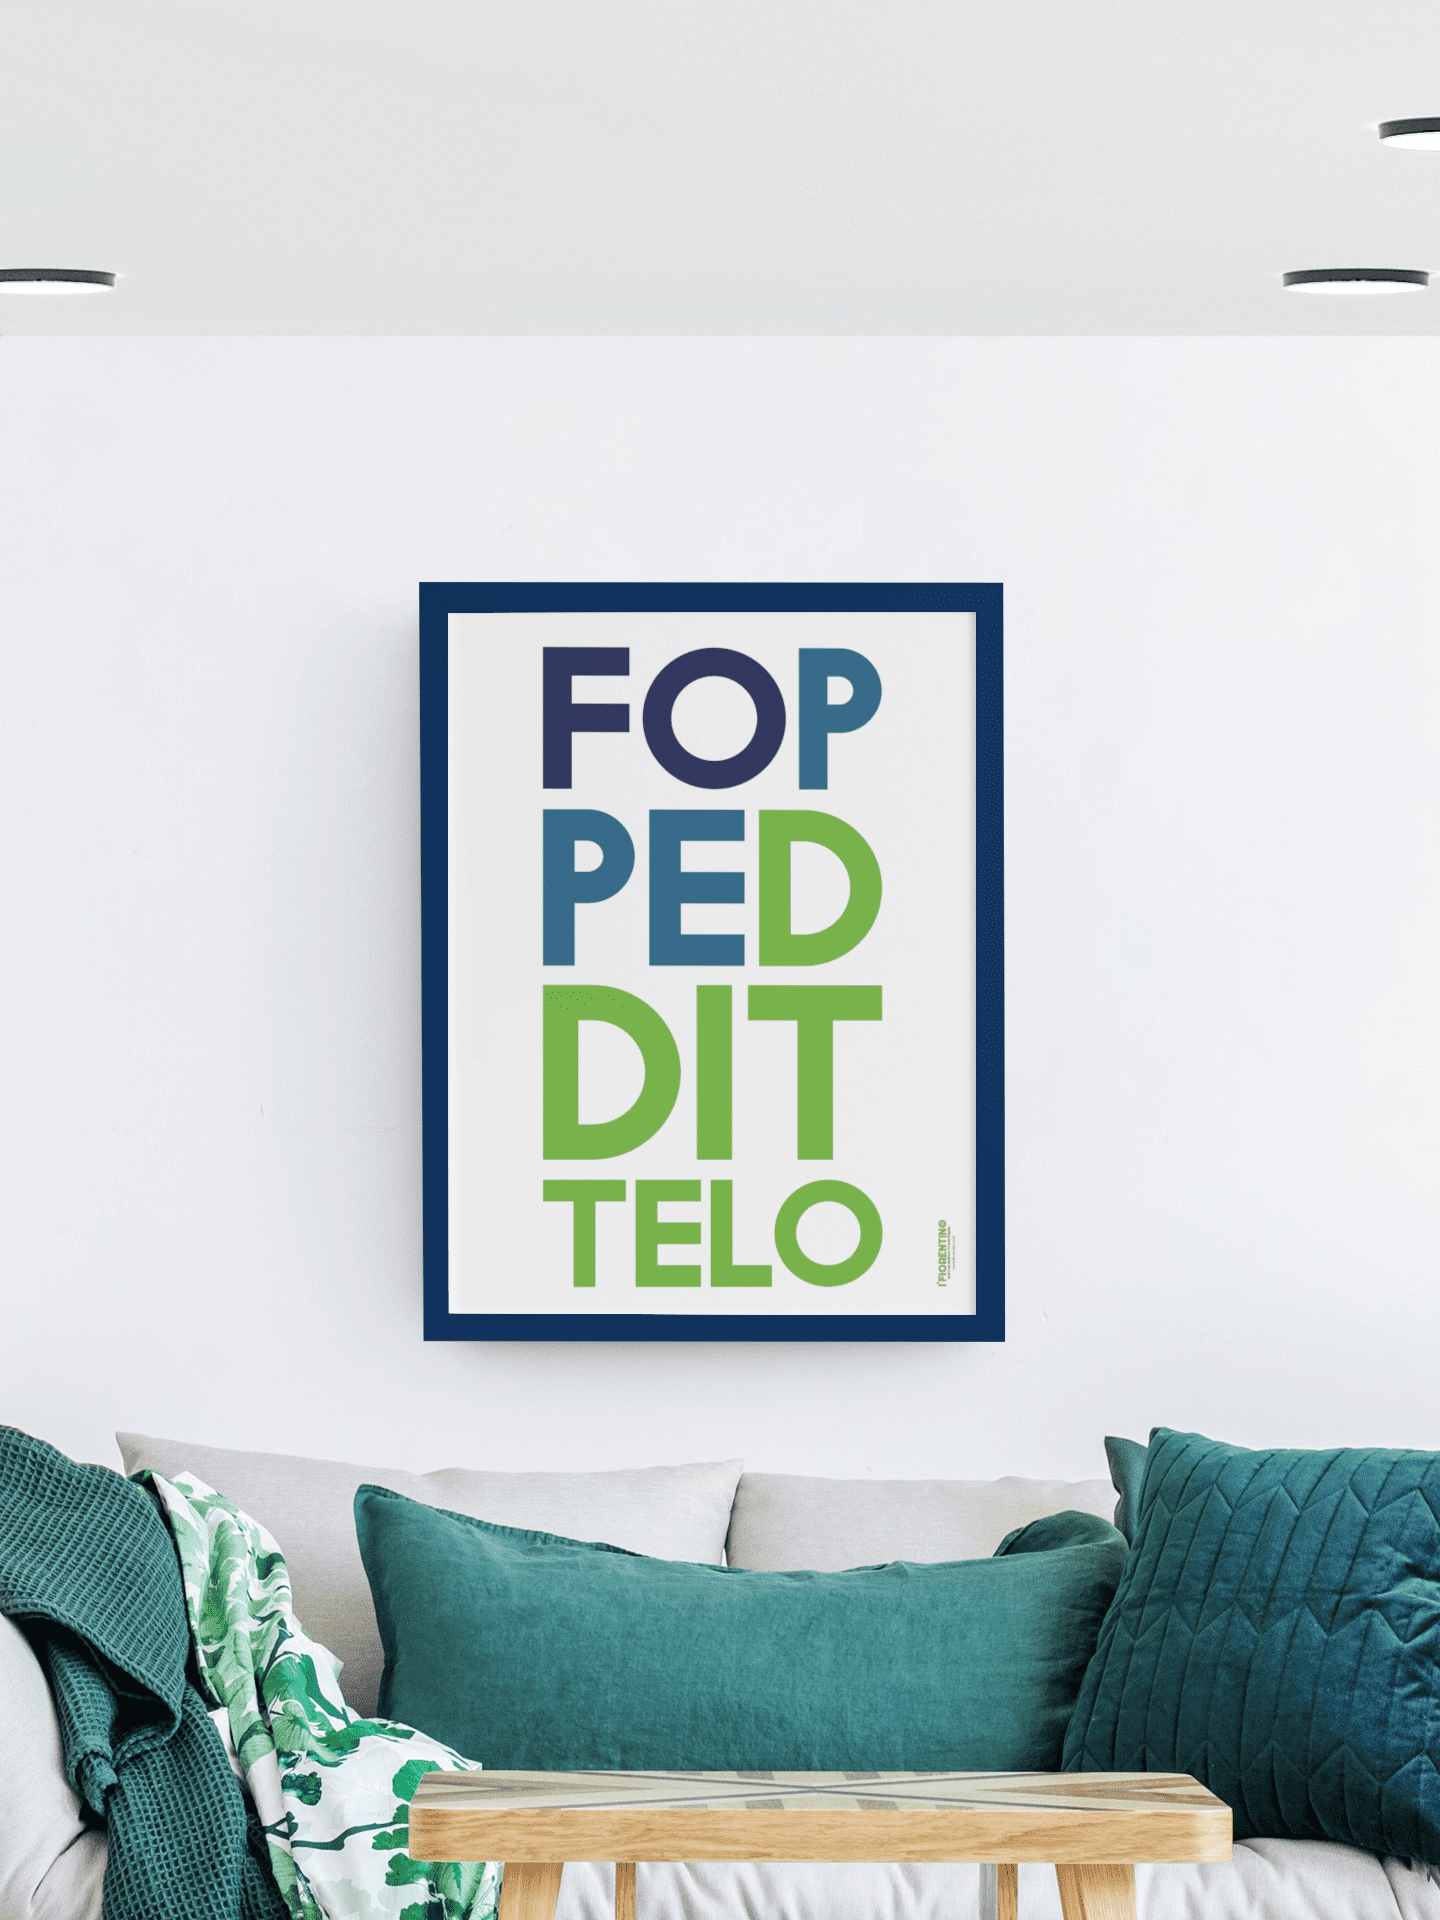 FOPPEDDITTELO - poster fiorentini - poster firenze - regalo fiorentino - fiorentino  - foppeddittelo